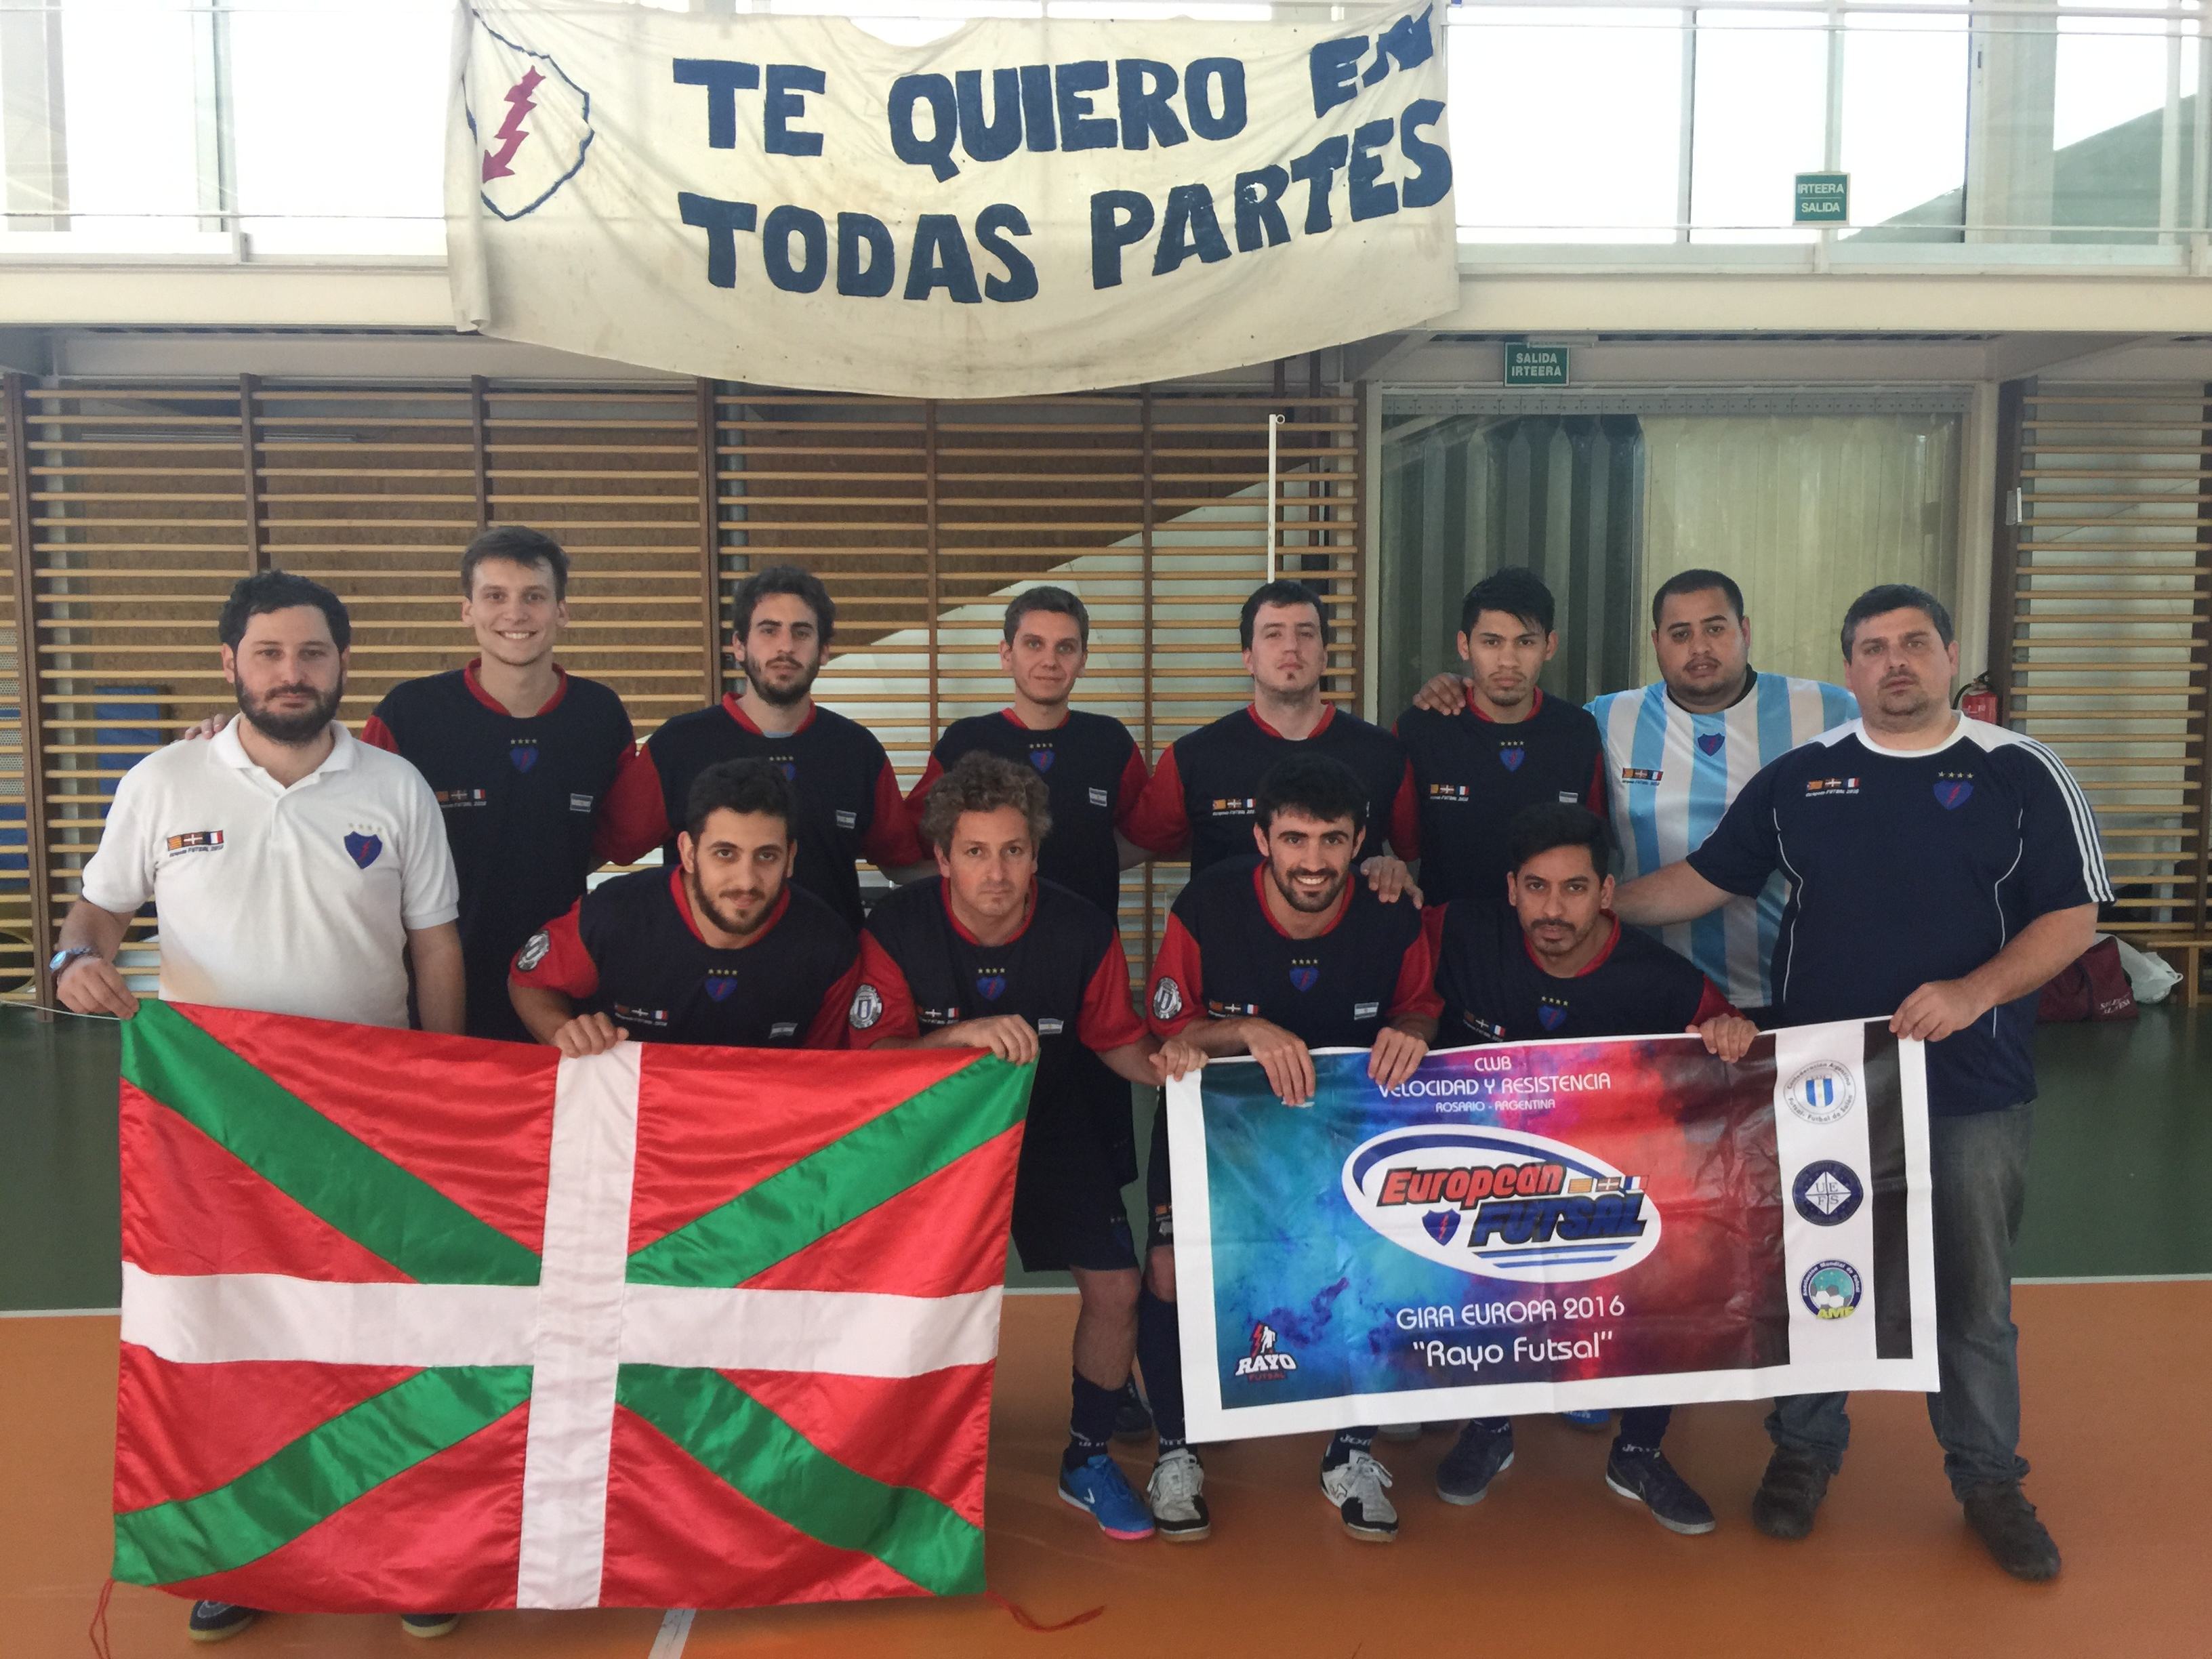 El club argentino Velocidad y Resistencia se enfrentará al Futsal Chigre Ali13 por el título del Torneo Internacional "European Futsal".